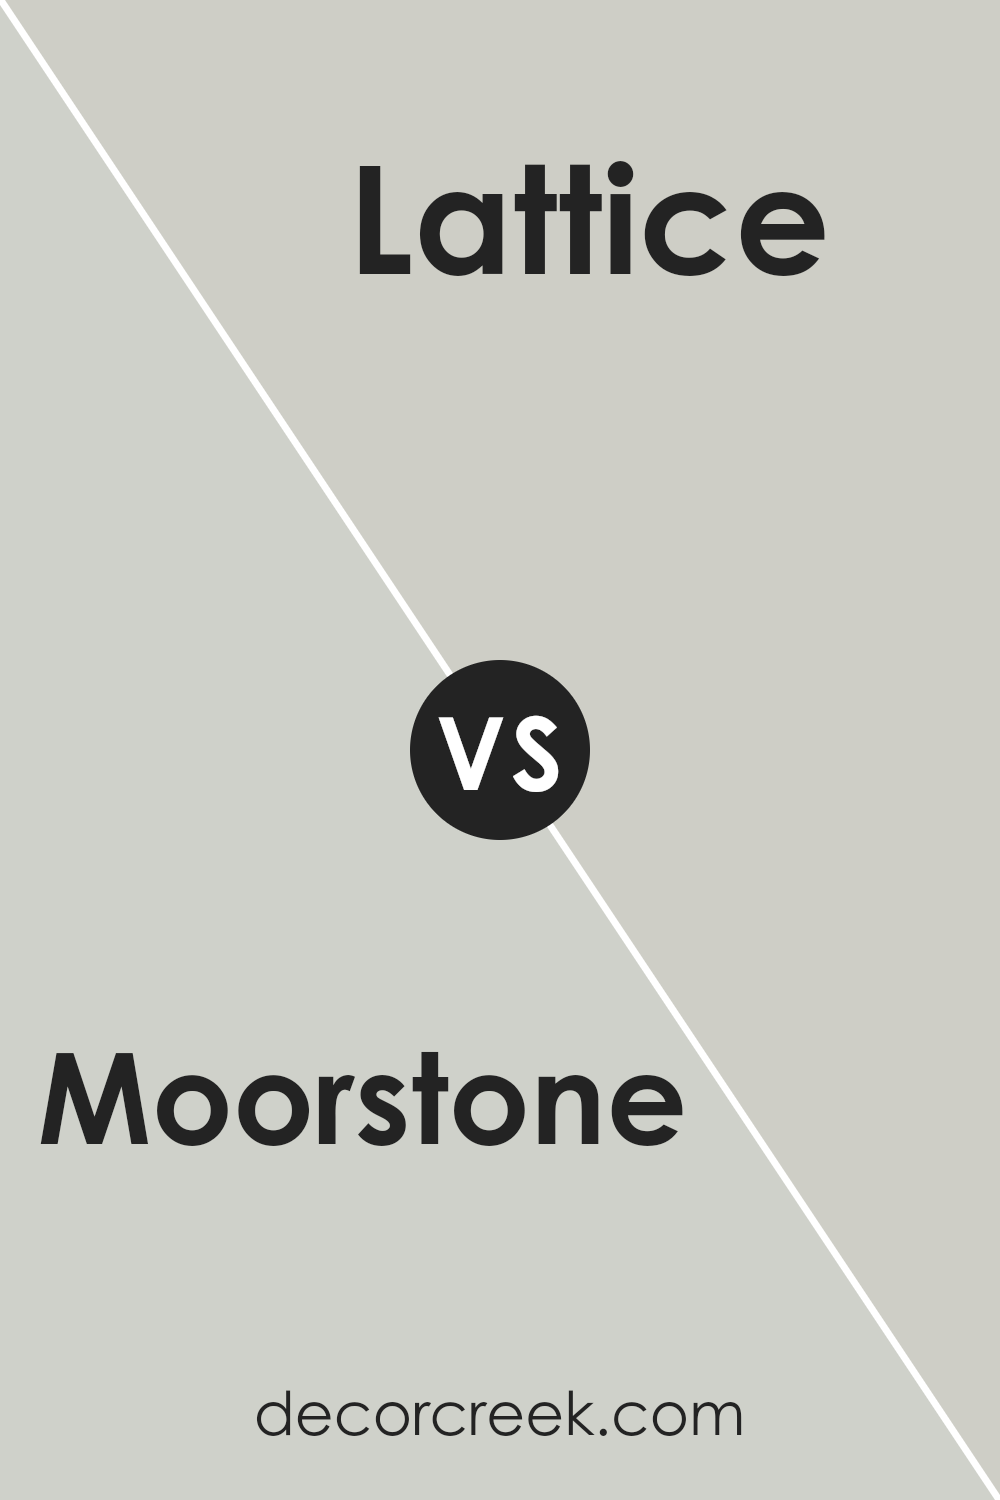 moorstone_sw_9630_vs_lattice_sw_7654